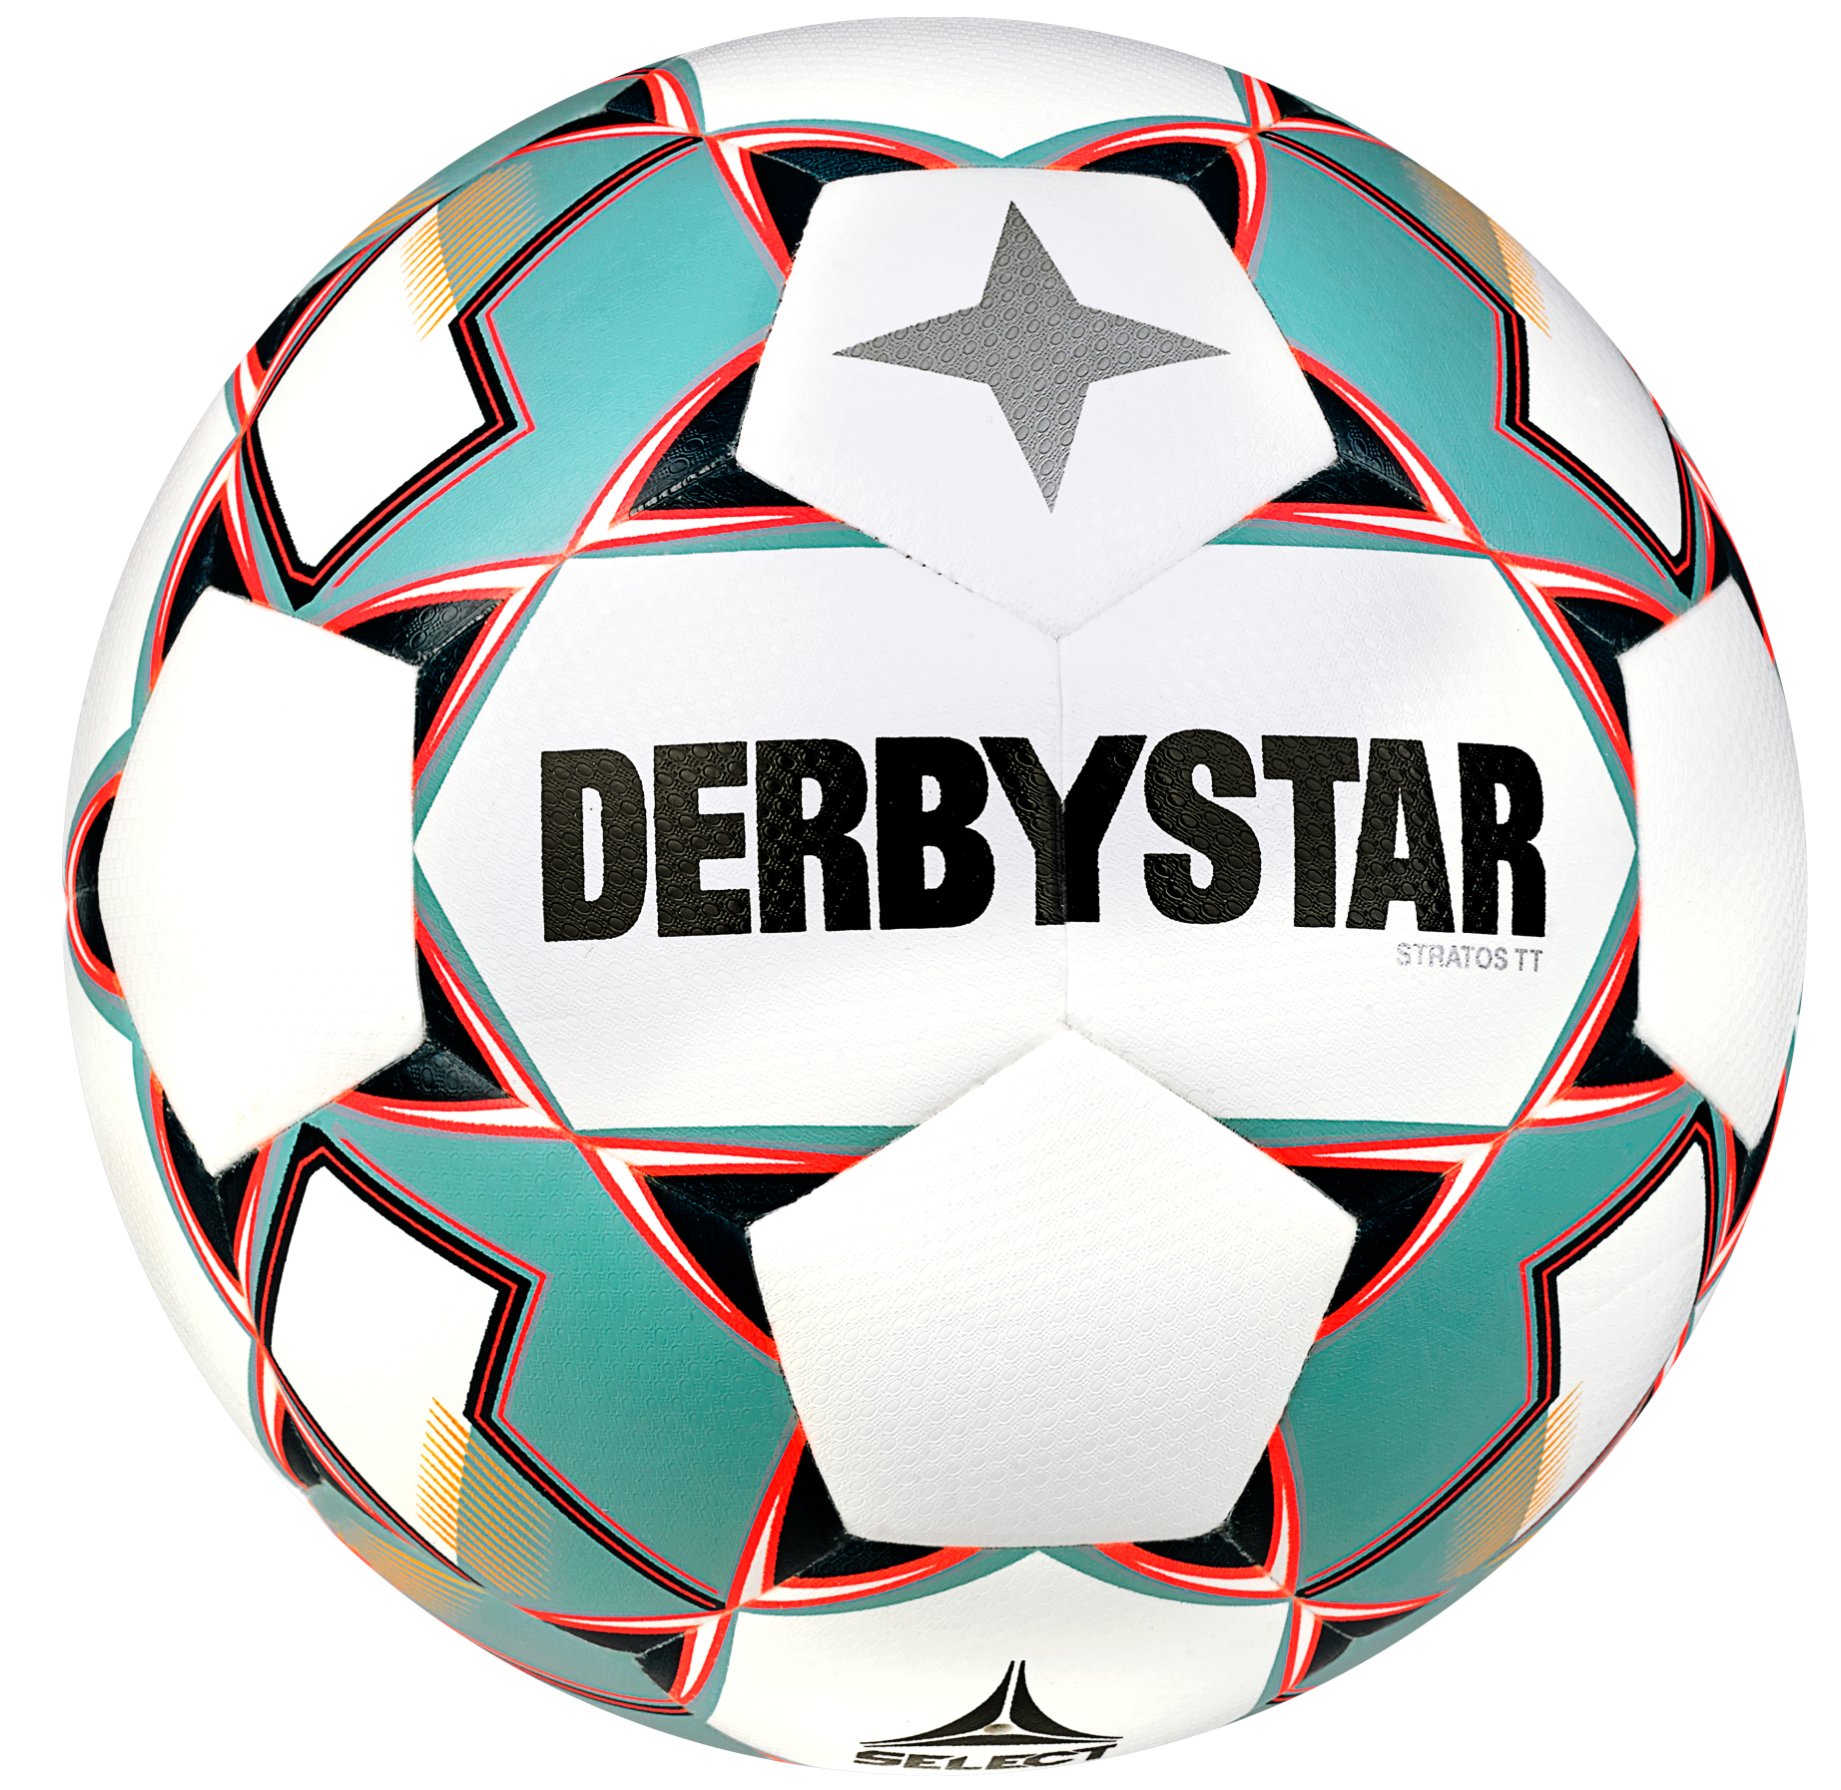 Boll Derbystar Stratos TT v23 Trainingsball